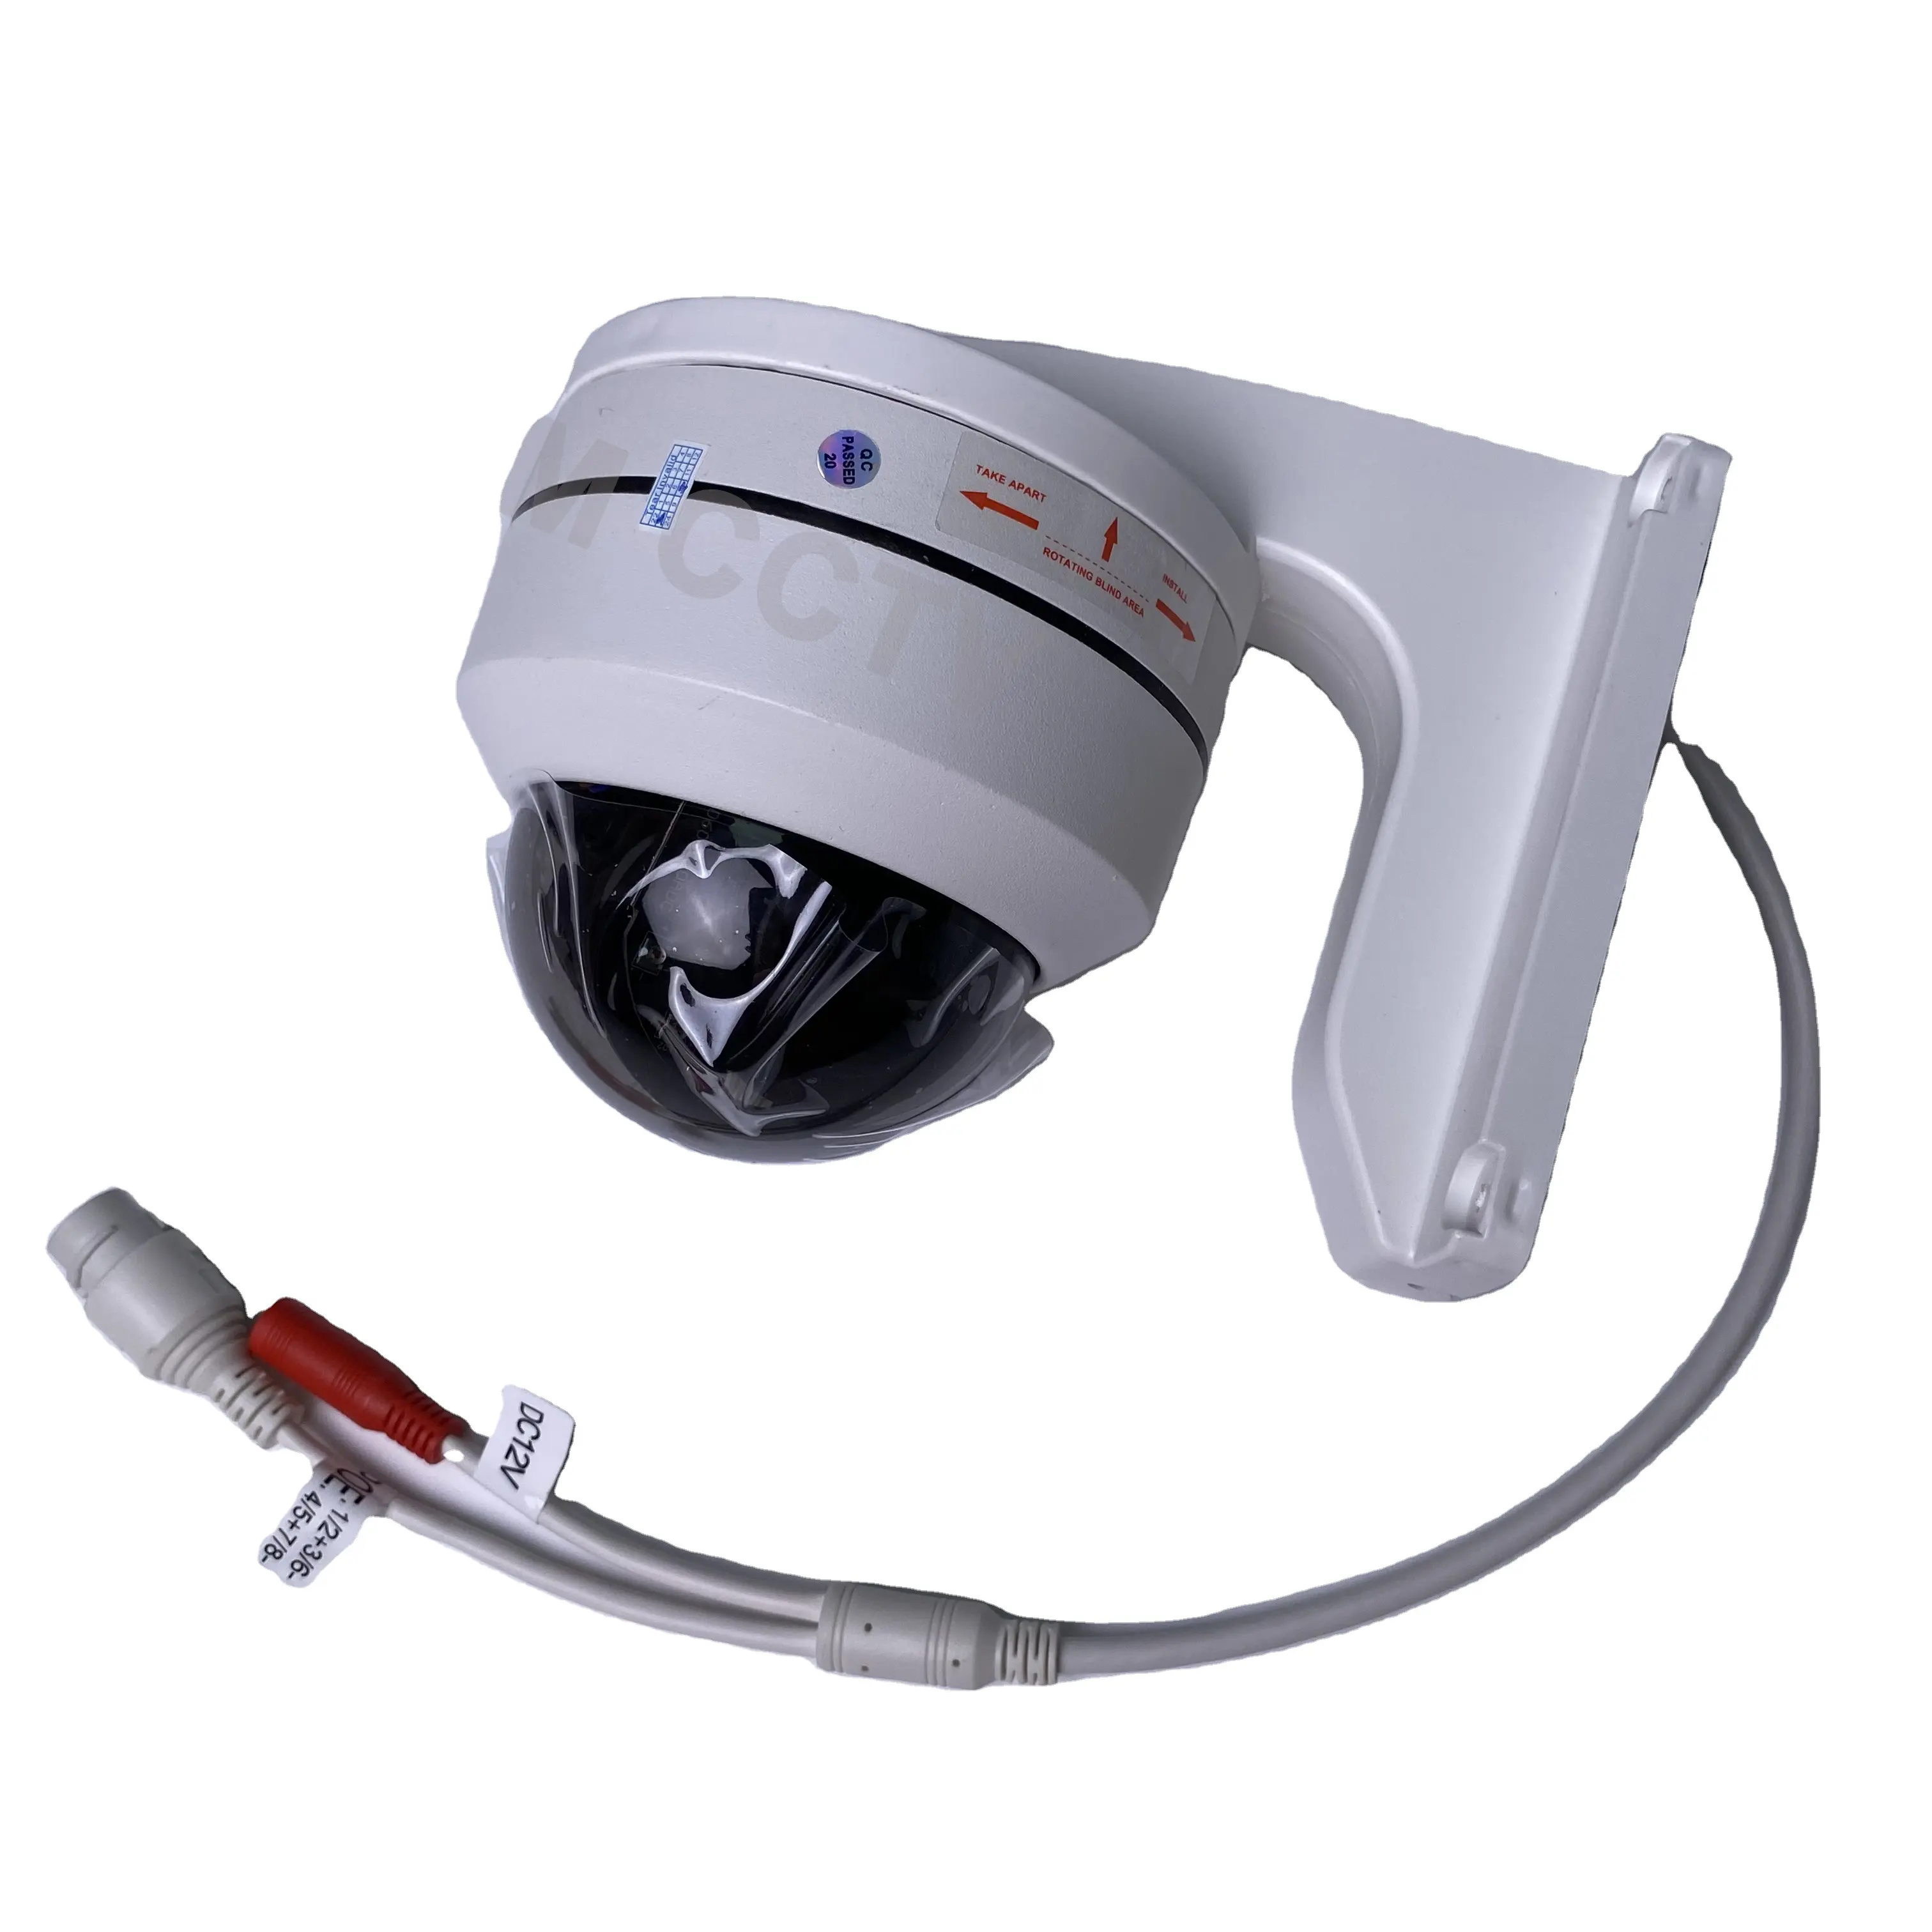 호환 가능한 HIK 4X 광학 줌 5MP PTZ 카메라 야간 투시경 POE 벽 브래킷이있는 야외 방수 IP 카메라